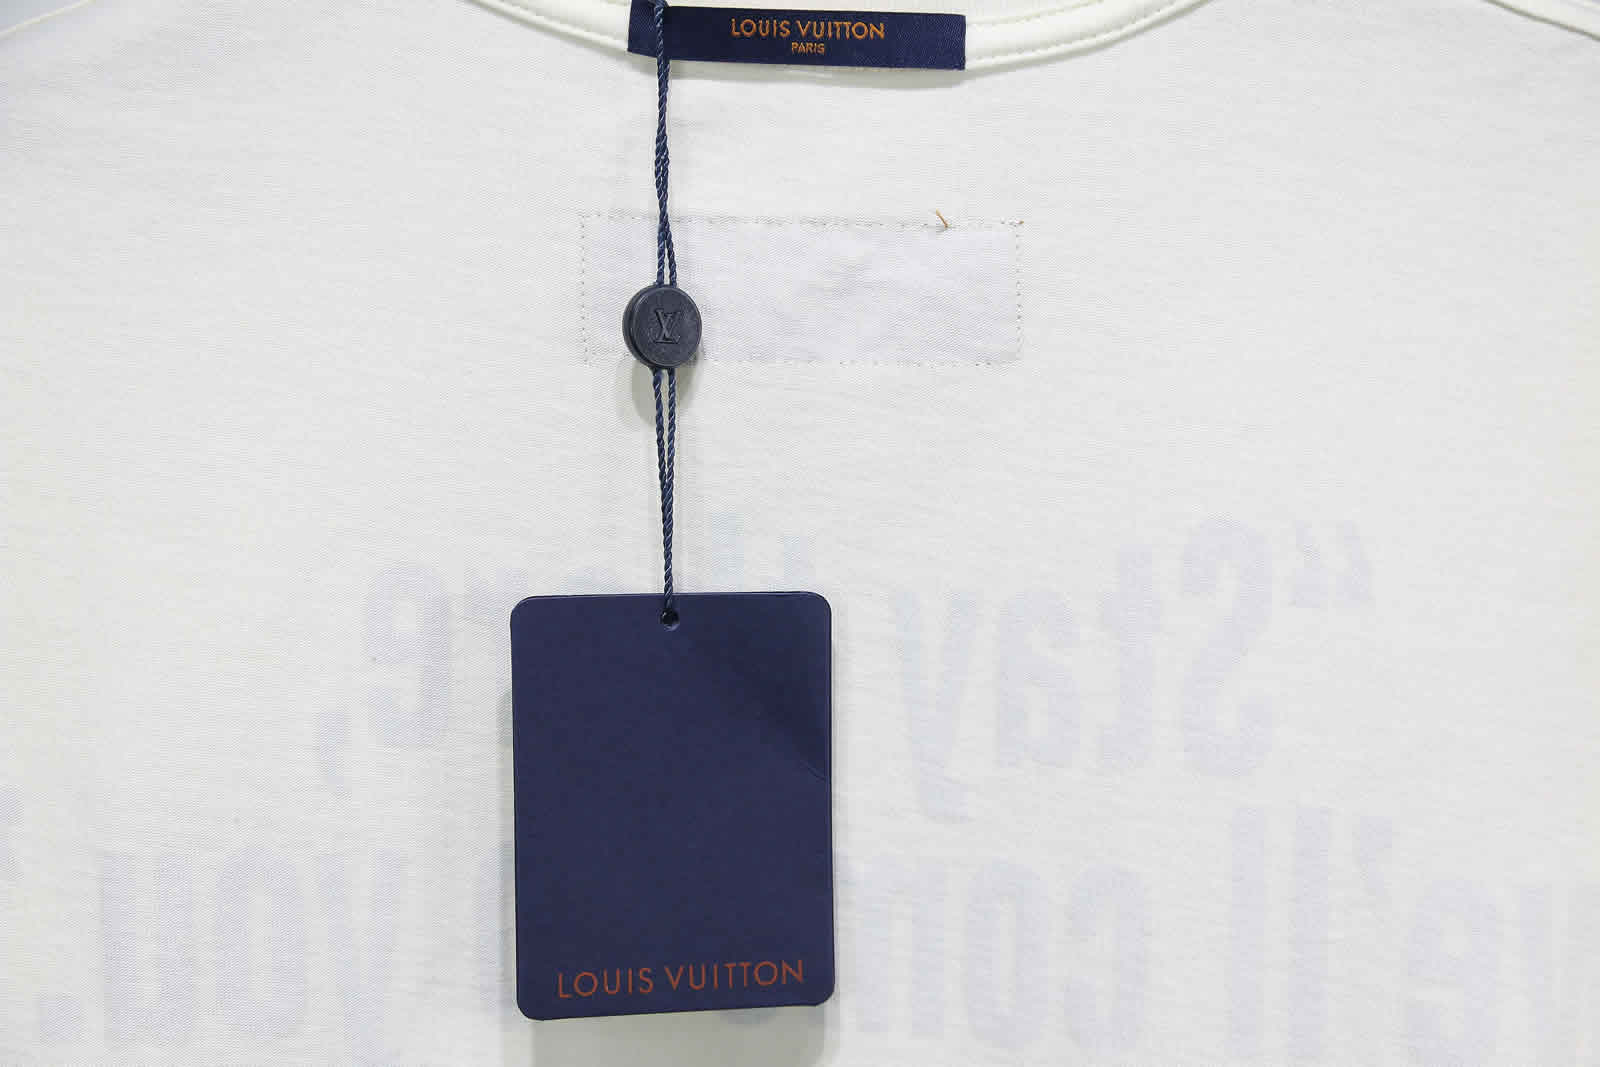 Louis Vuitton Catwalk T Shirt 2021 30 - www.kickbulk.org